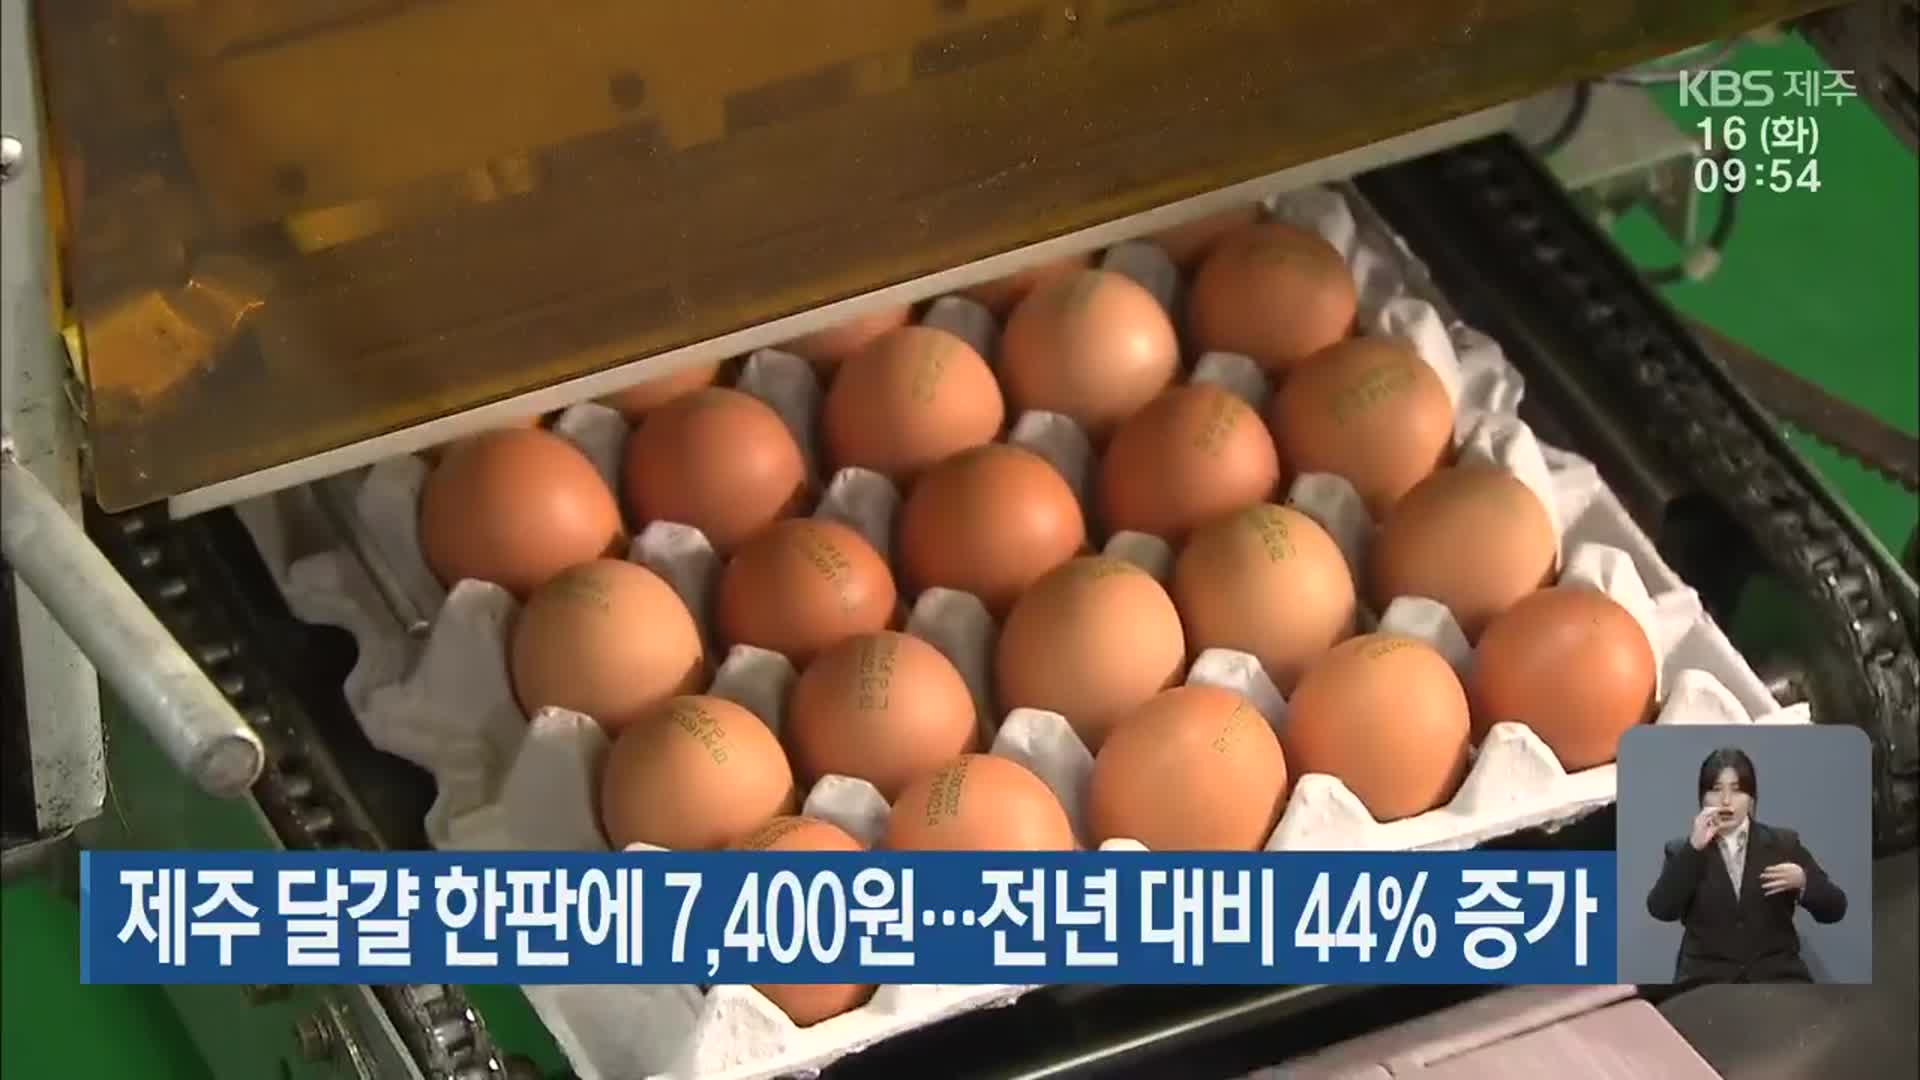 제주 달걀 한판에 7,400원…전년 대비 44% 증가